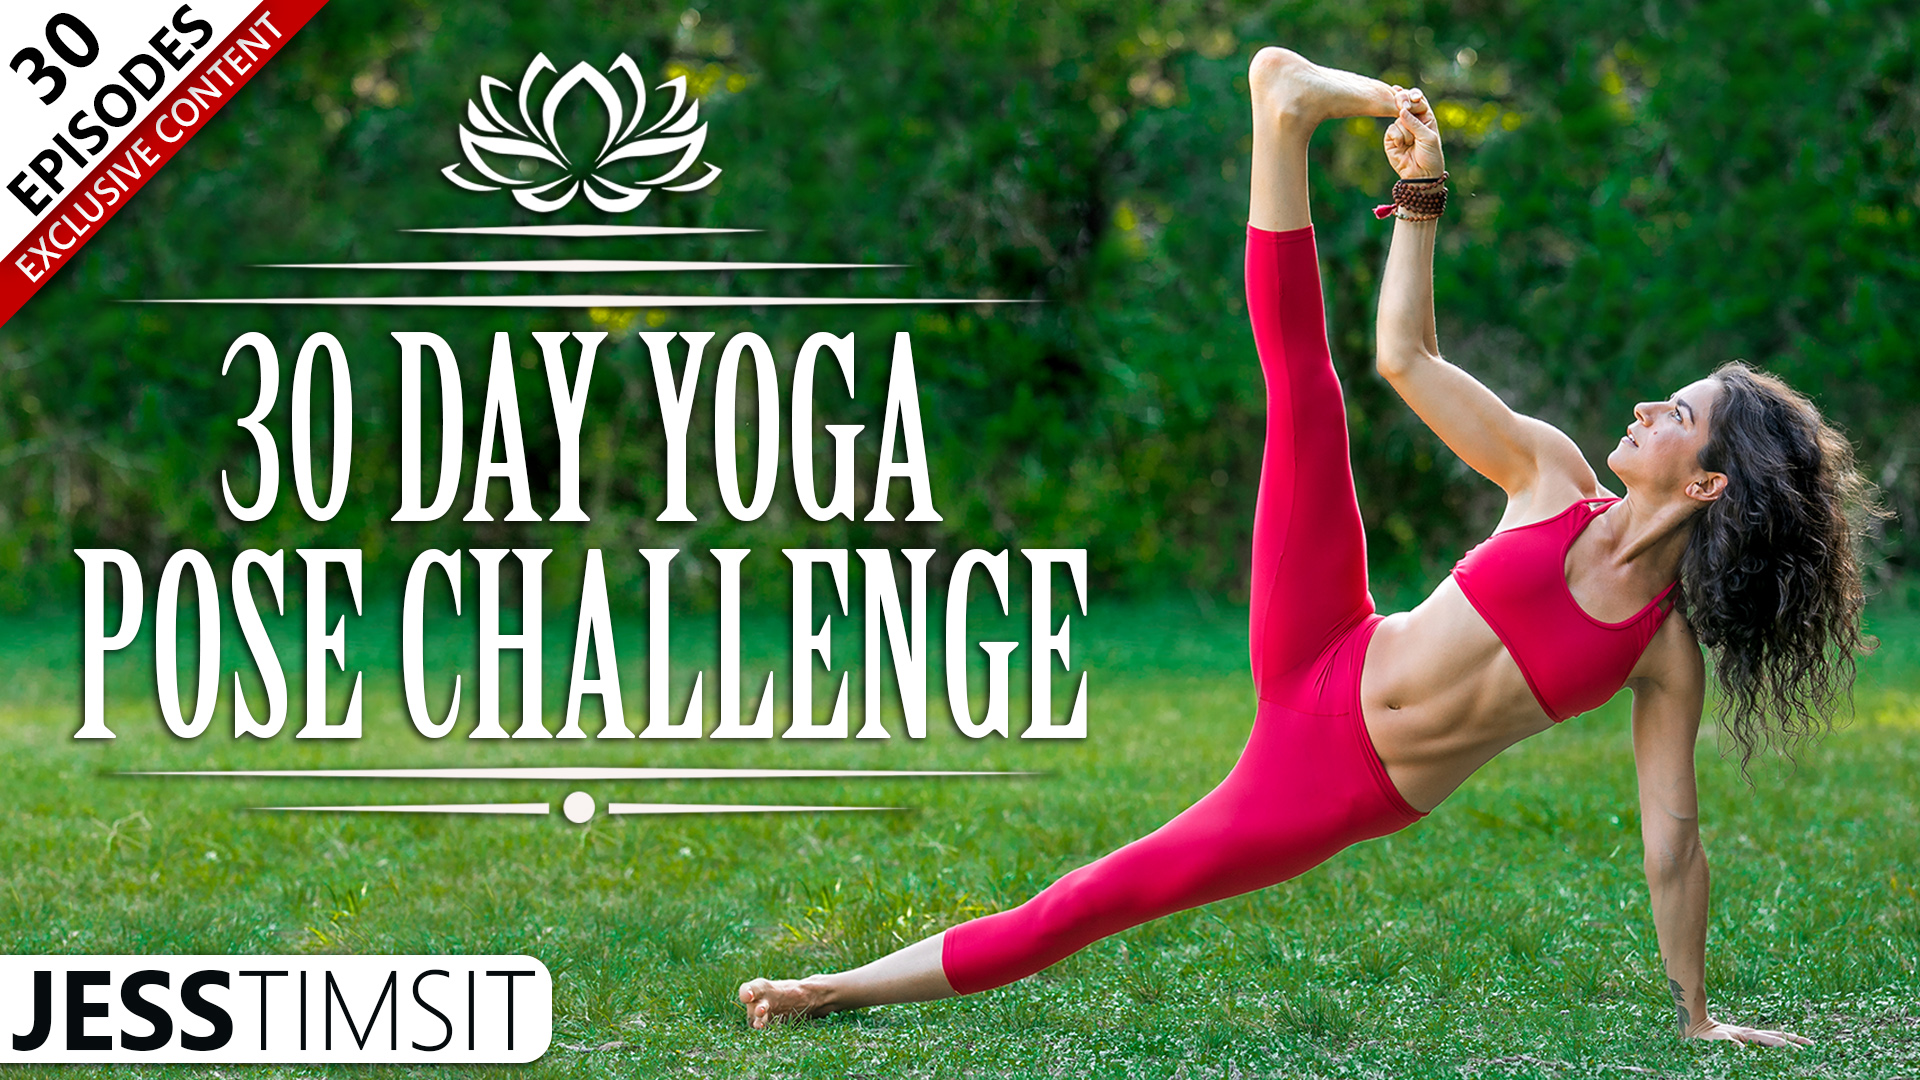 21-Day Yoga Challenge